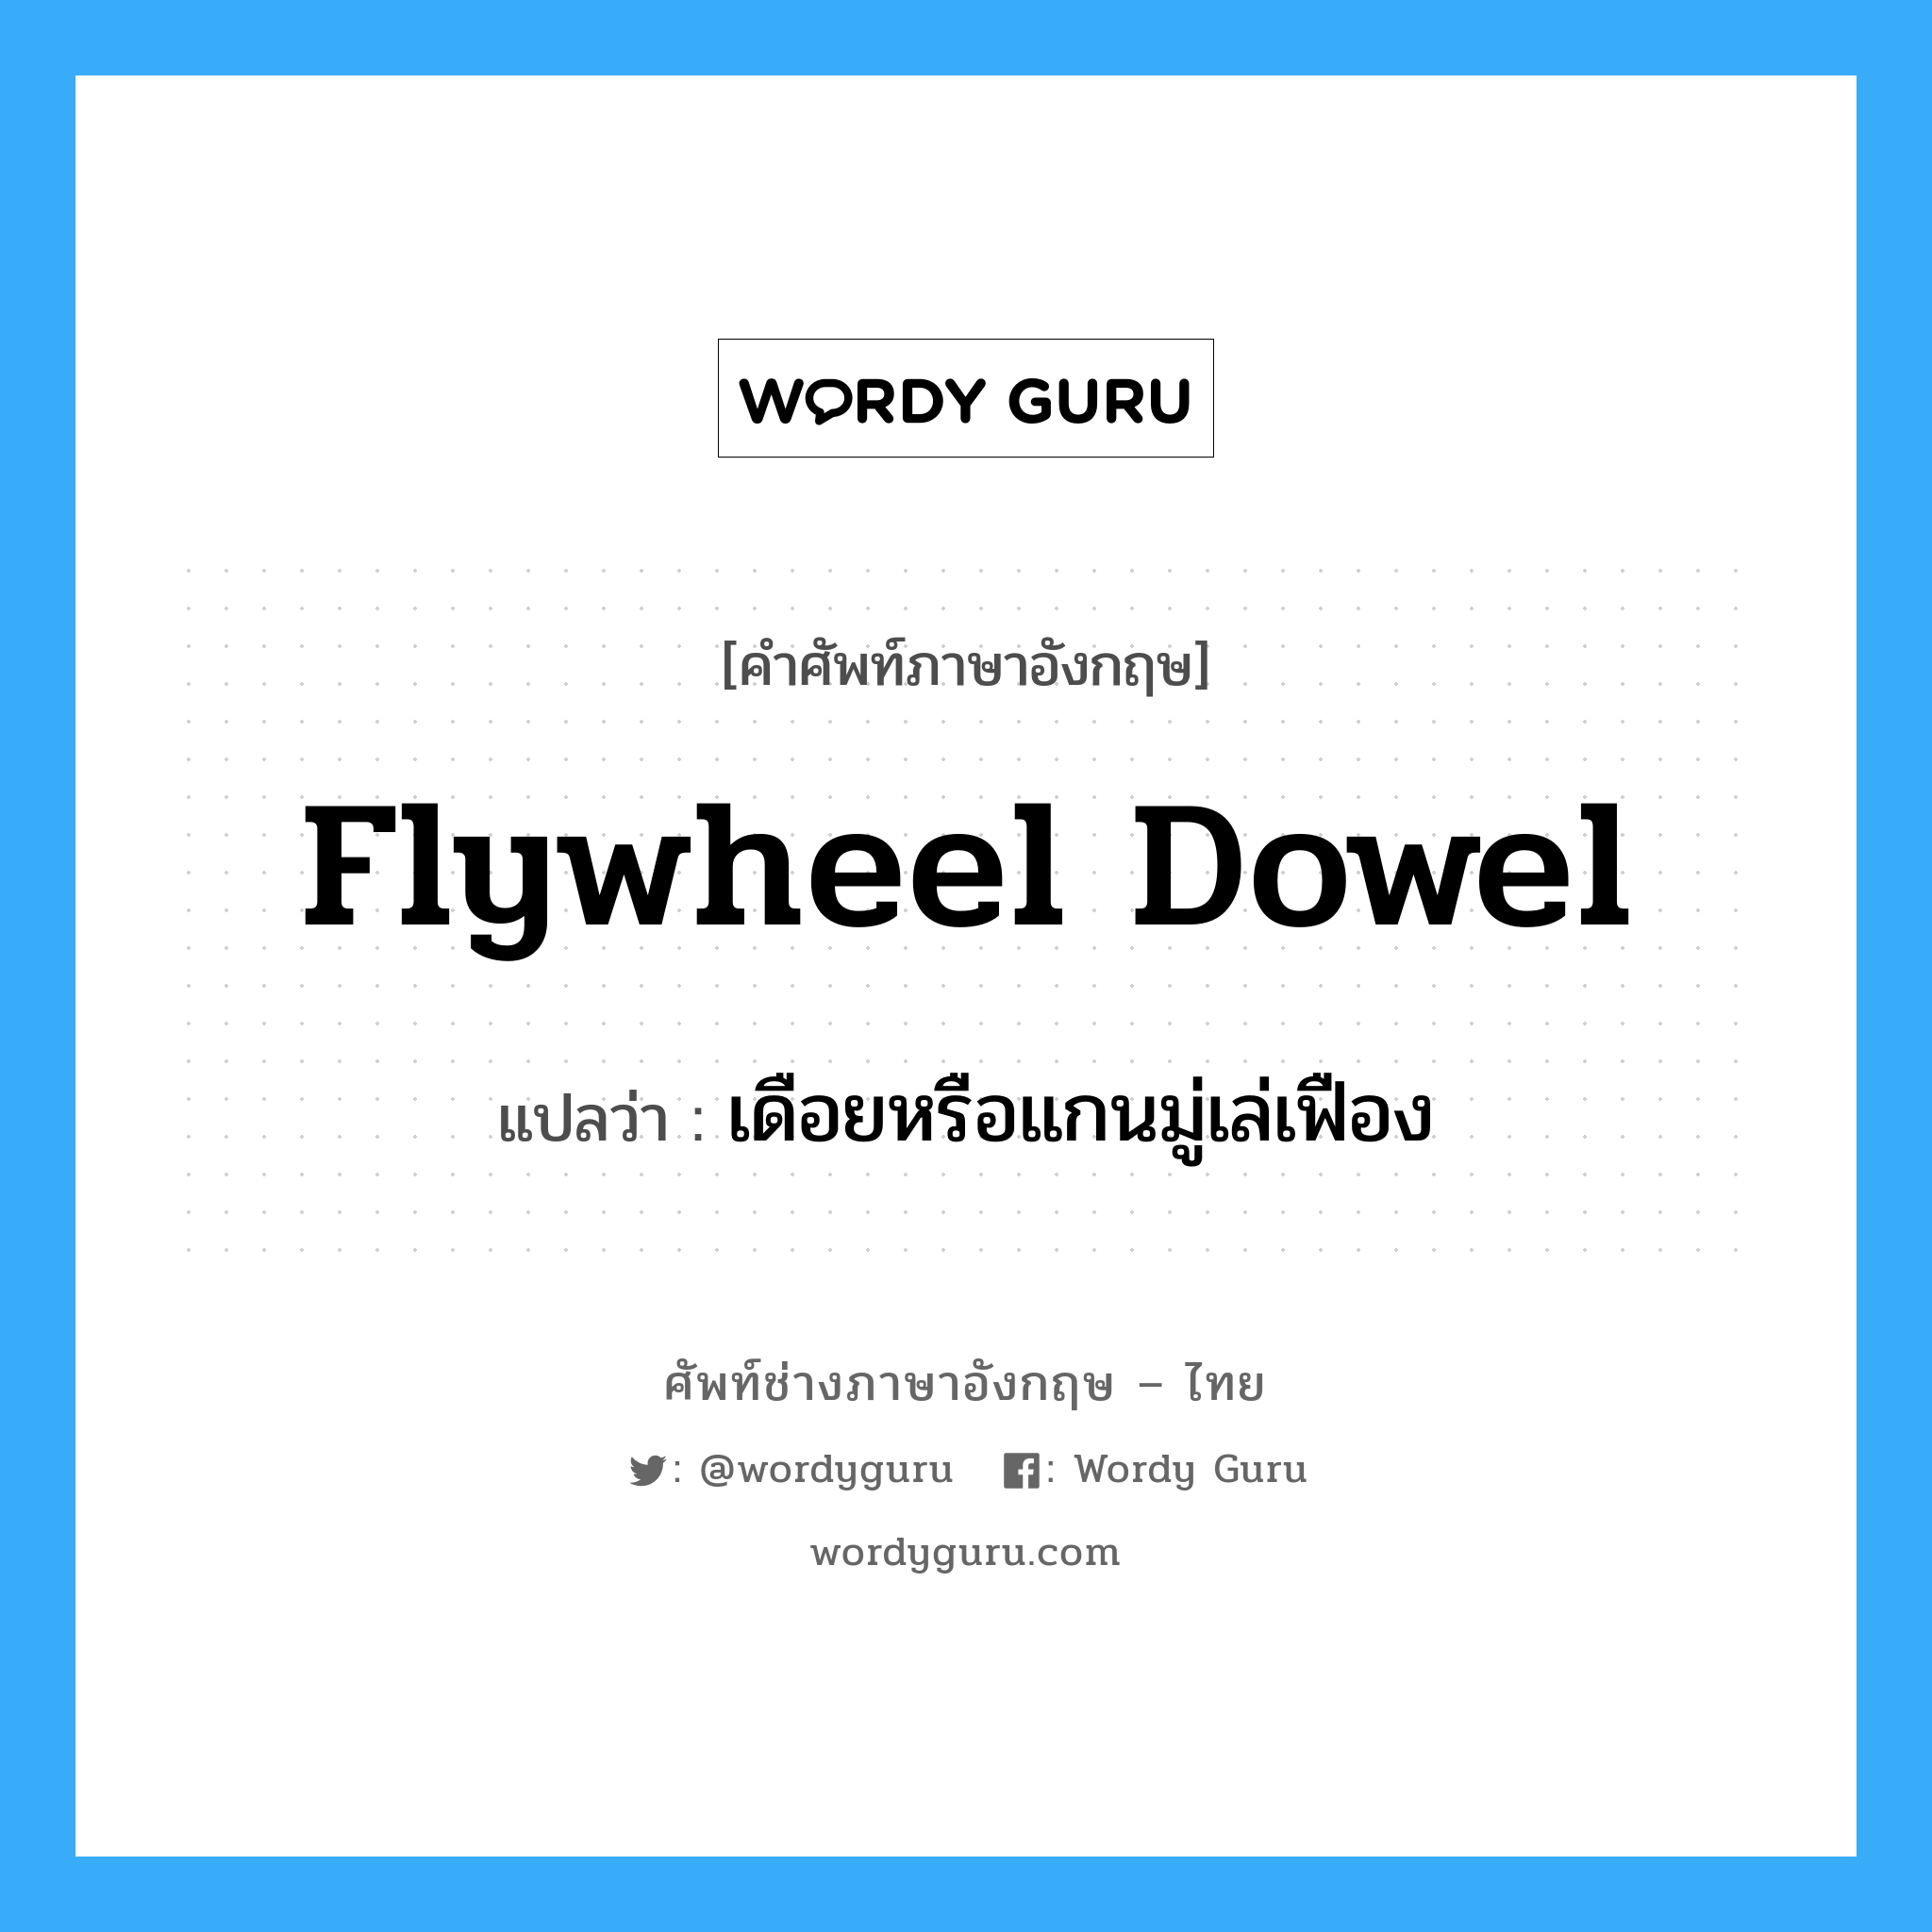 เดือยหรือแกนมู่เล่เฟือง ภาษาอังกฤษ?, คำศัพท์ช่างภาษาอังกฤษ - ไทย เดือยหรือแกนมู่เล่เฟือง คำศัพท์ภาษาอังกฤษ เดือยหรือแกนมู่เล่เฟือง แปลว่า flywheel dowel